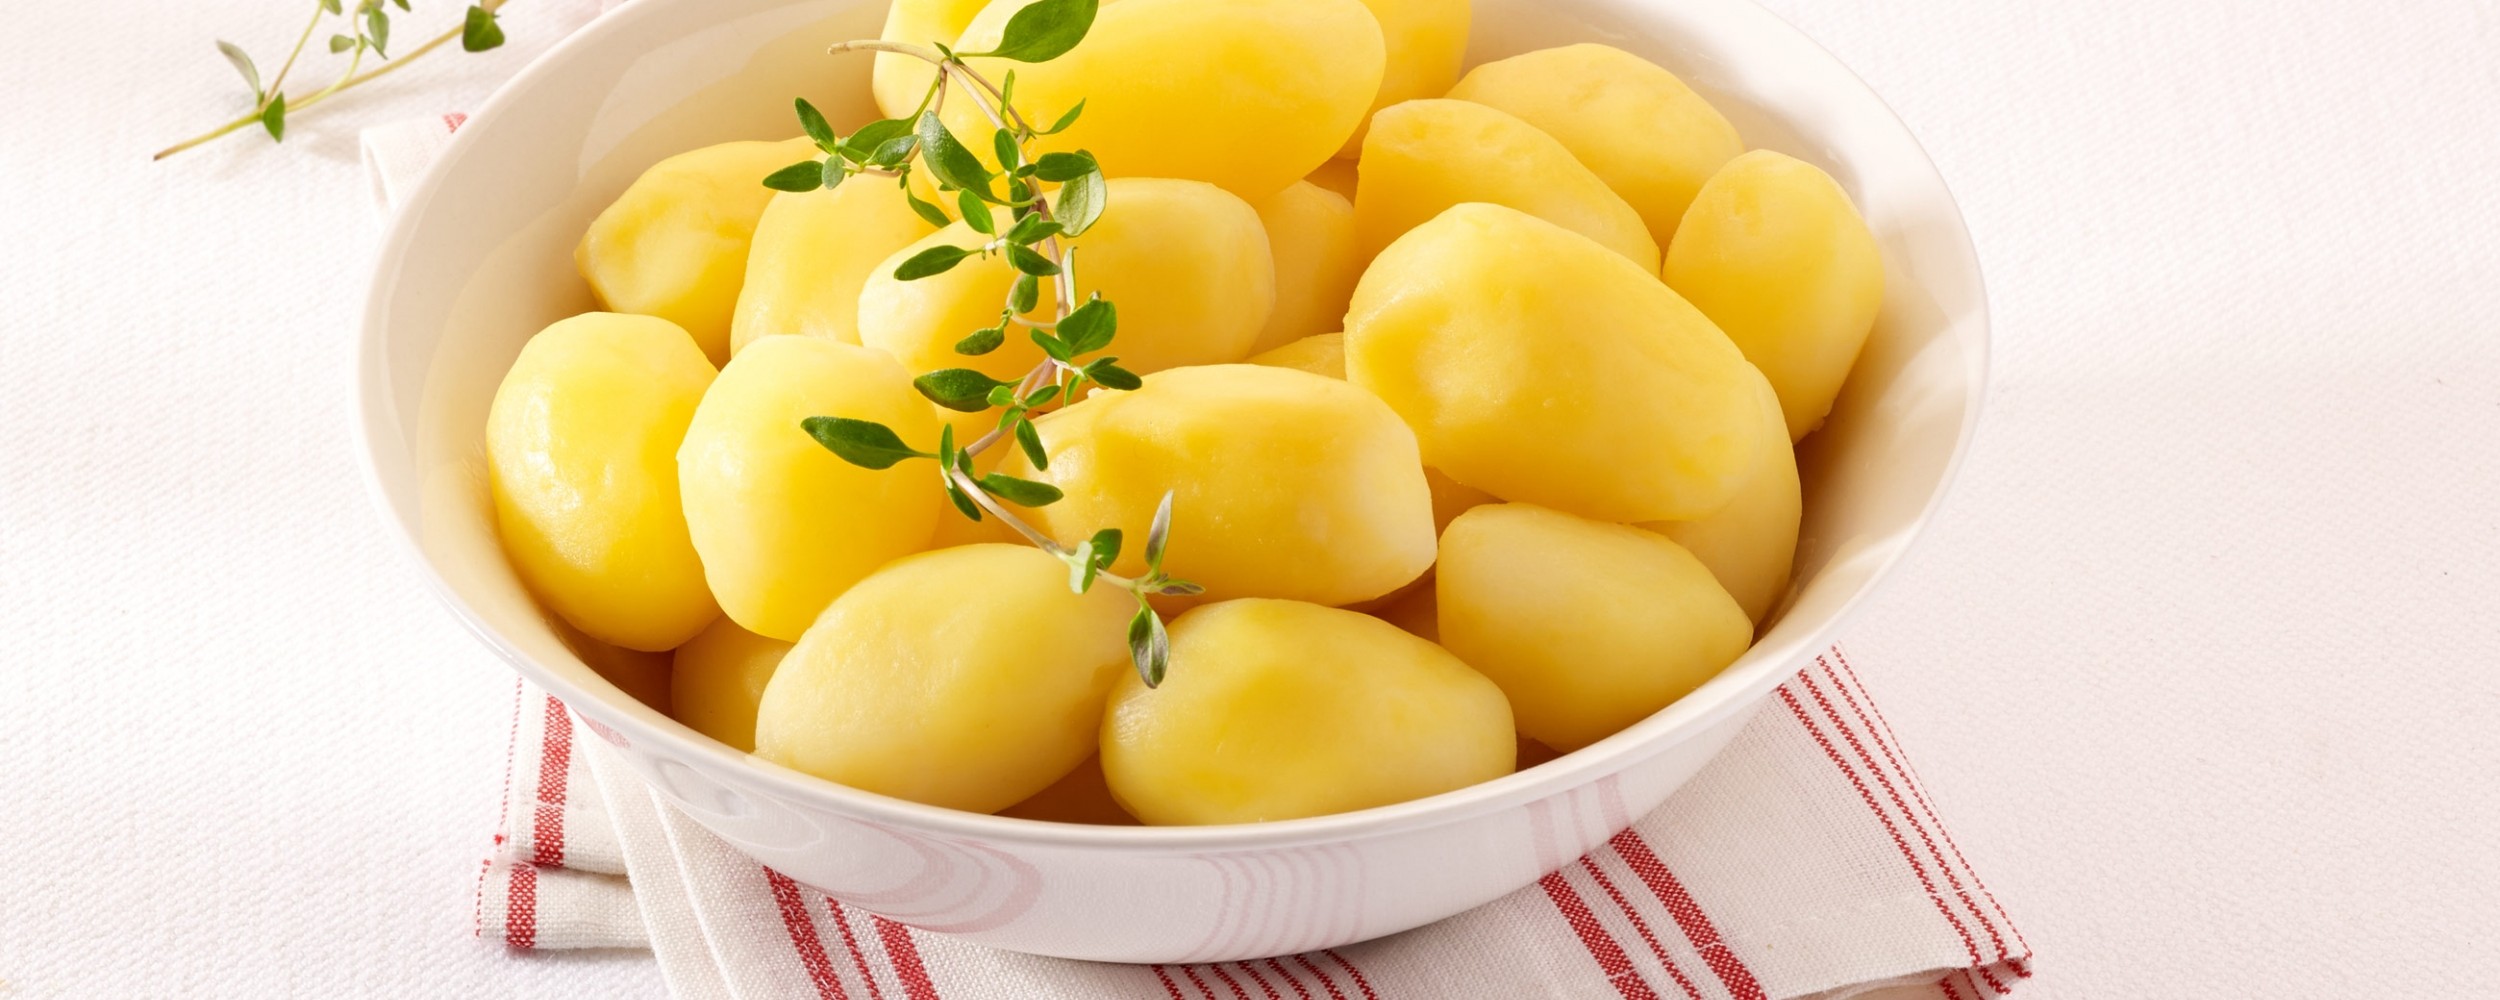 Organic small potatoes 